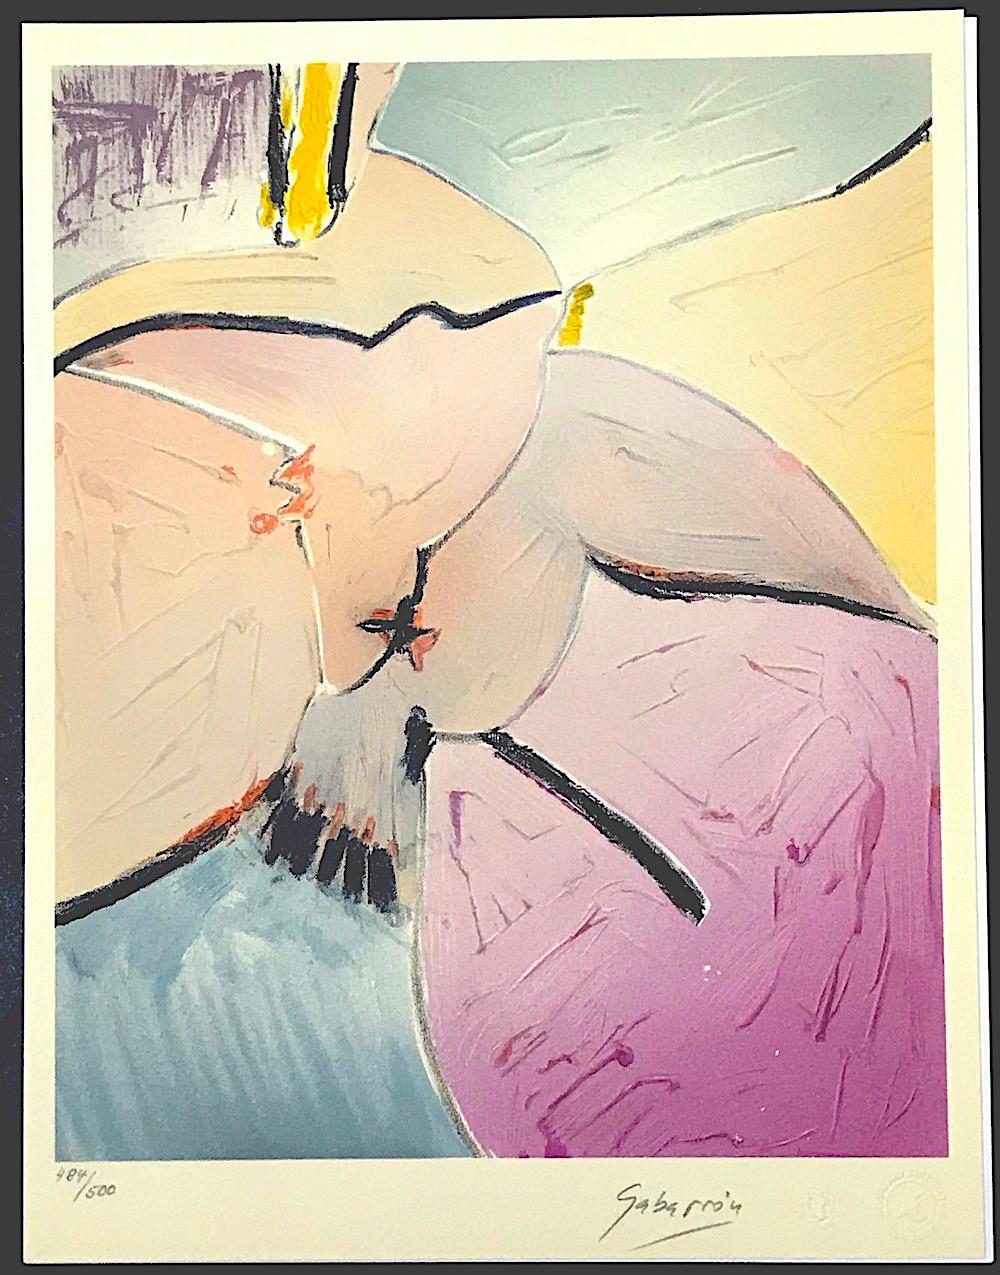 HOPES FOR PEACE ist eine handgefertigte Farblithographie des international anerkannten spanischen Künstlers Cristóbal Gabarrón, die 1986 auf Arches-Papier gedruckt wurde. HOPES FOR PEACE ist eine fantasievolle Komposition, die einen abstrakten Vogel